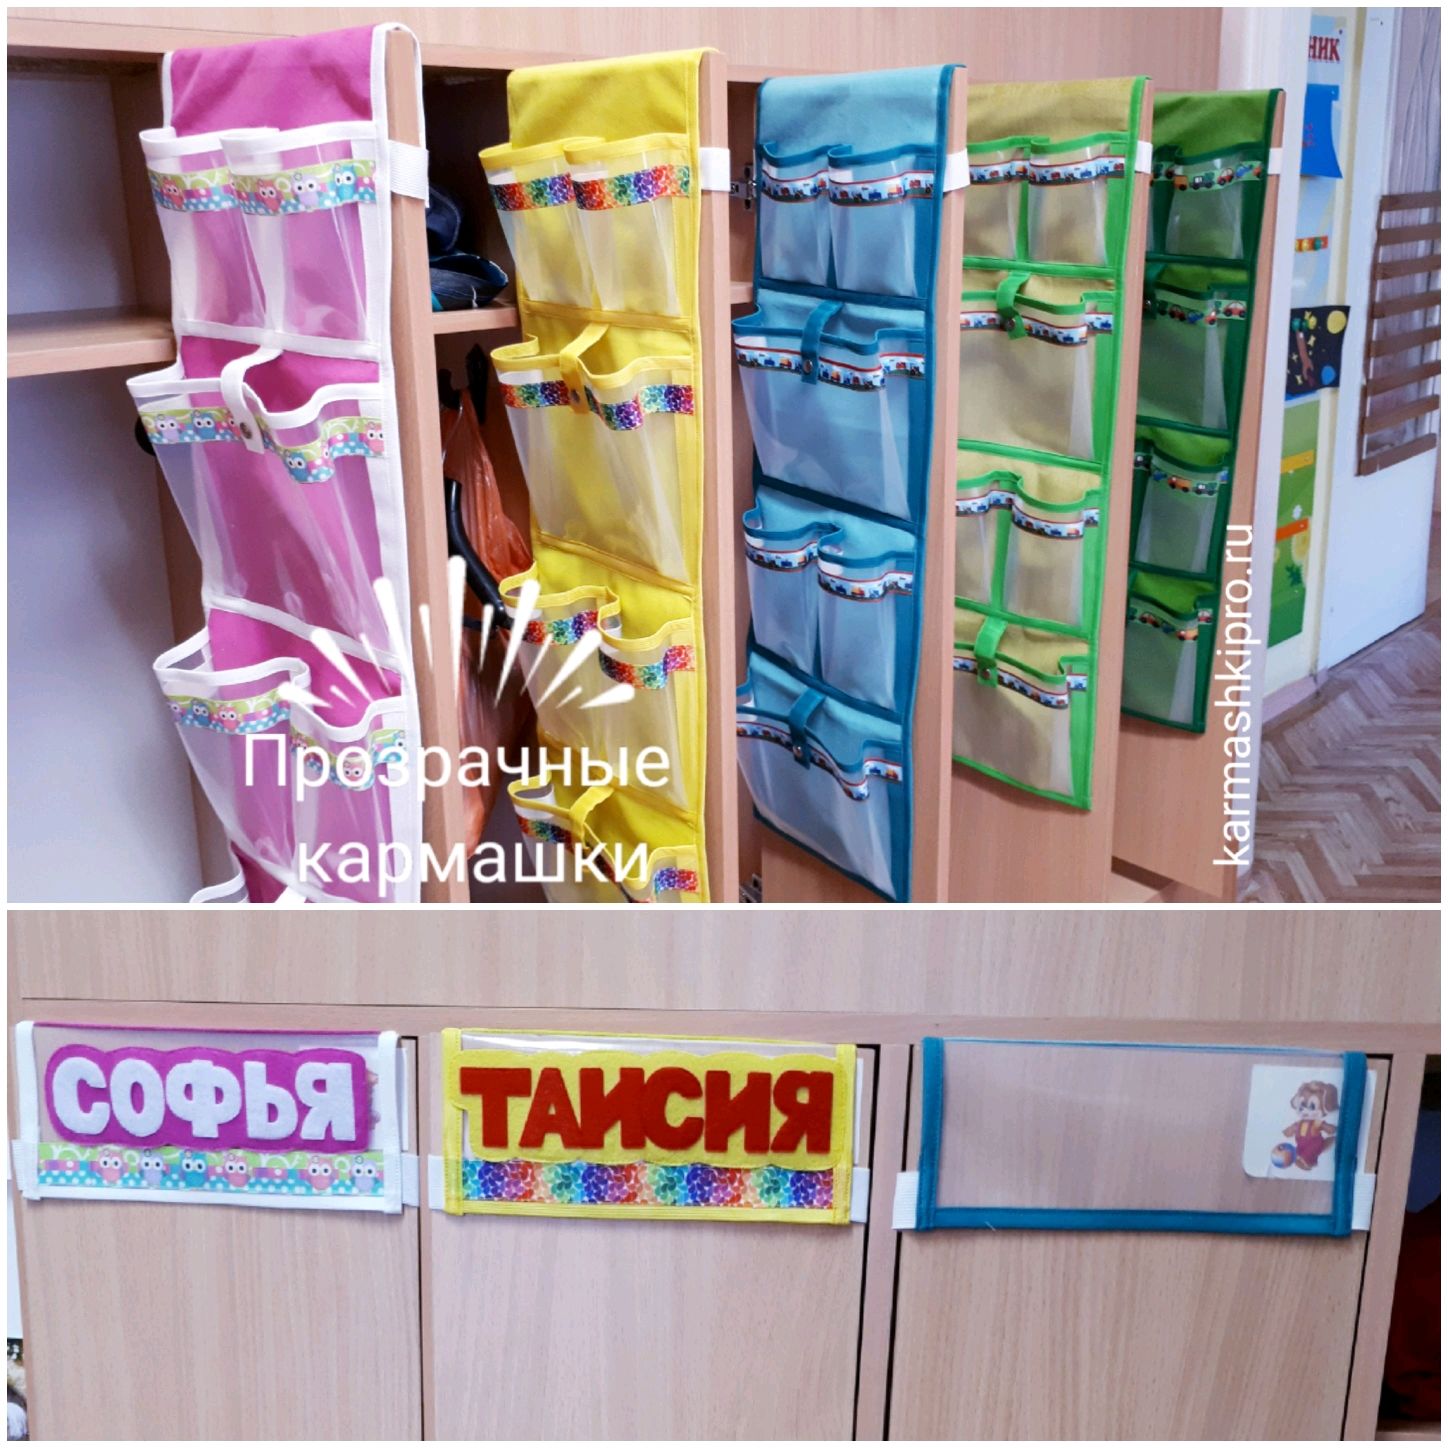 Именные кармашки для шкафчика в детском саду